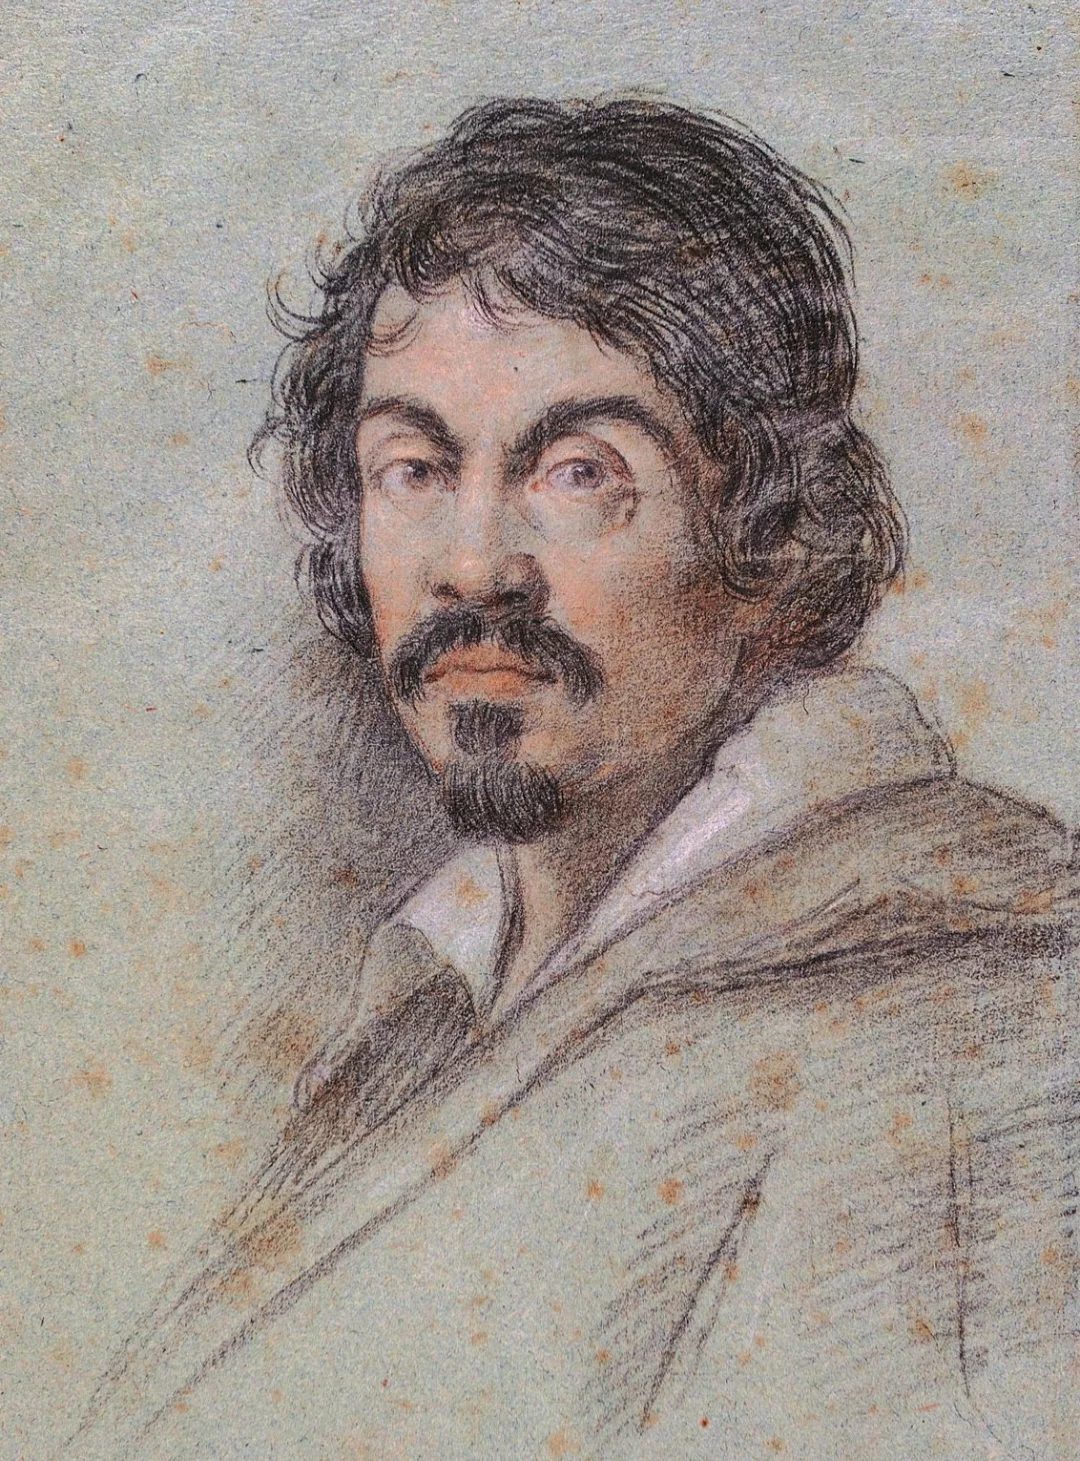 Caravaggio: O genial pintor ‘maldito’ que chocou a sociedade - Retrato de Caravaggio feito por Ottavio Leoni- domínio público